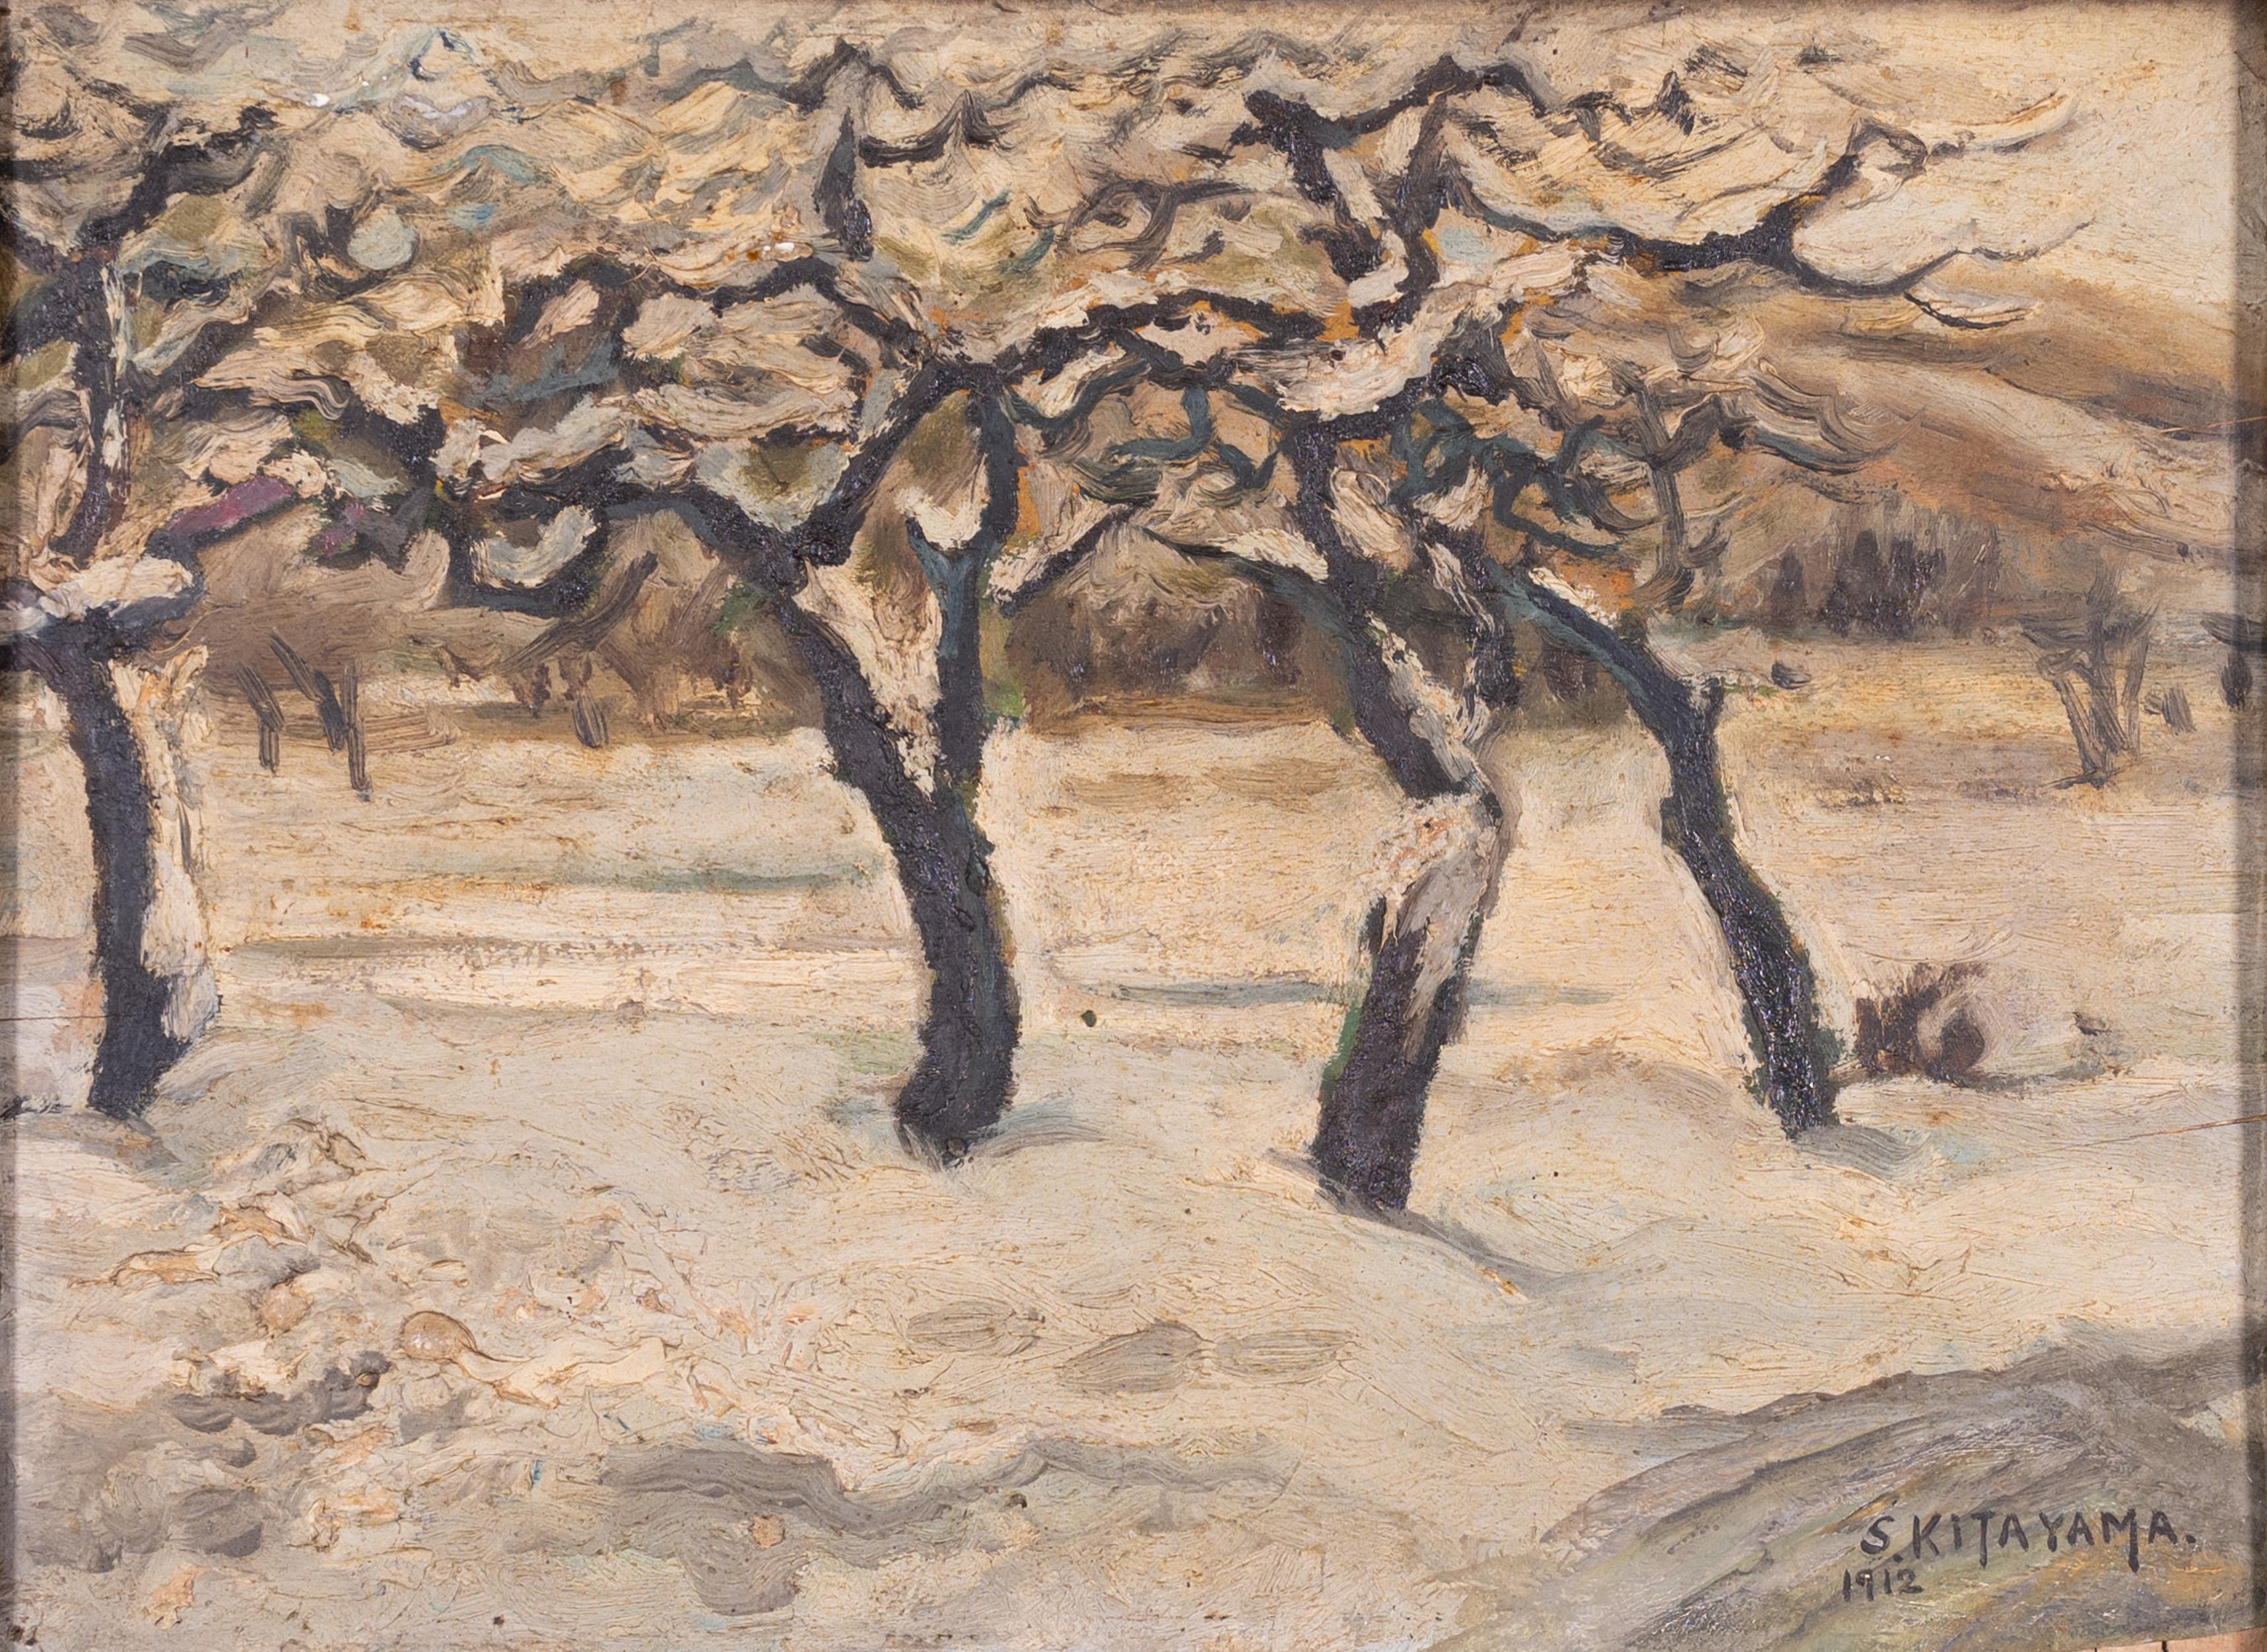 Impressionistisches Gemälde eines verschneiten Baumes auf einer Holztafel in einem vergoldeten Rahmen mit Schnitzereien aus der Zeit.
Es ist in der rechten unteren Ecke mit S Kitayama signiert und auf 1912 datiert.
Weitere Inschrift in Kanji auf